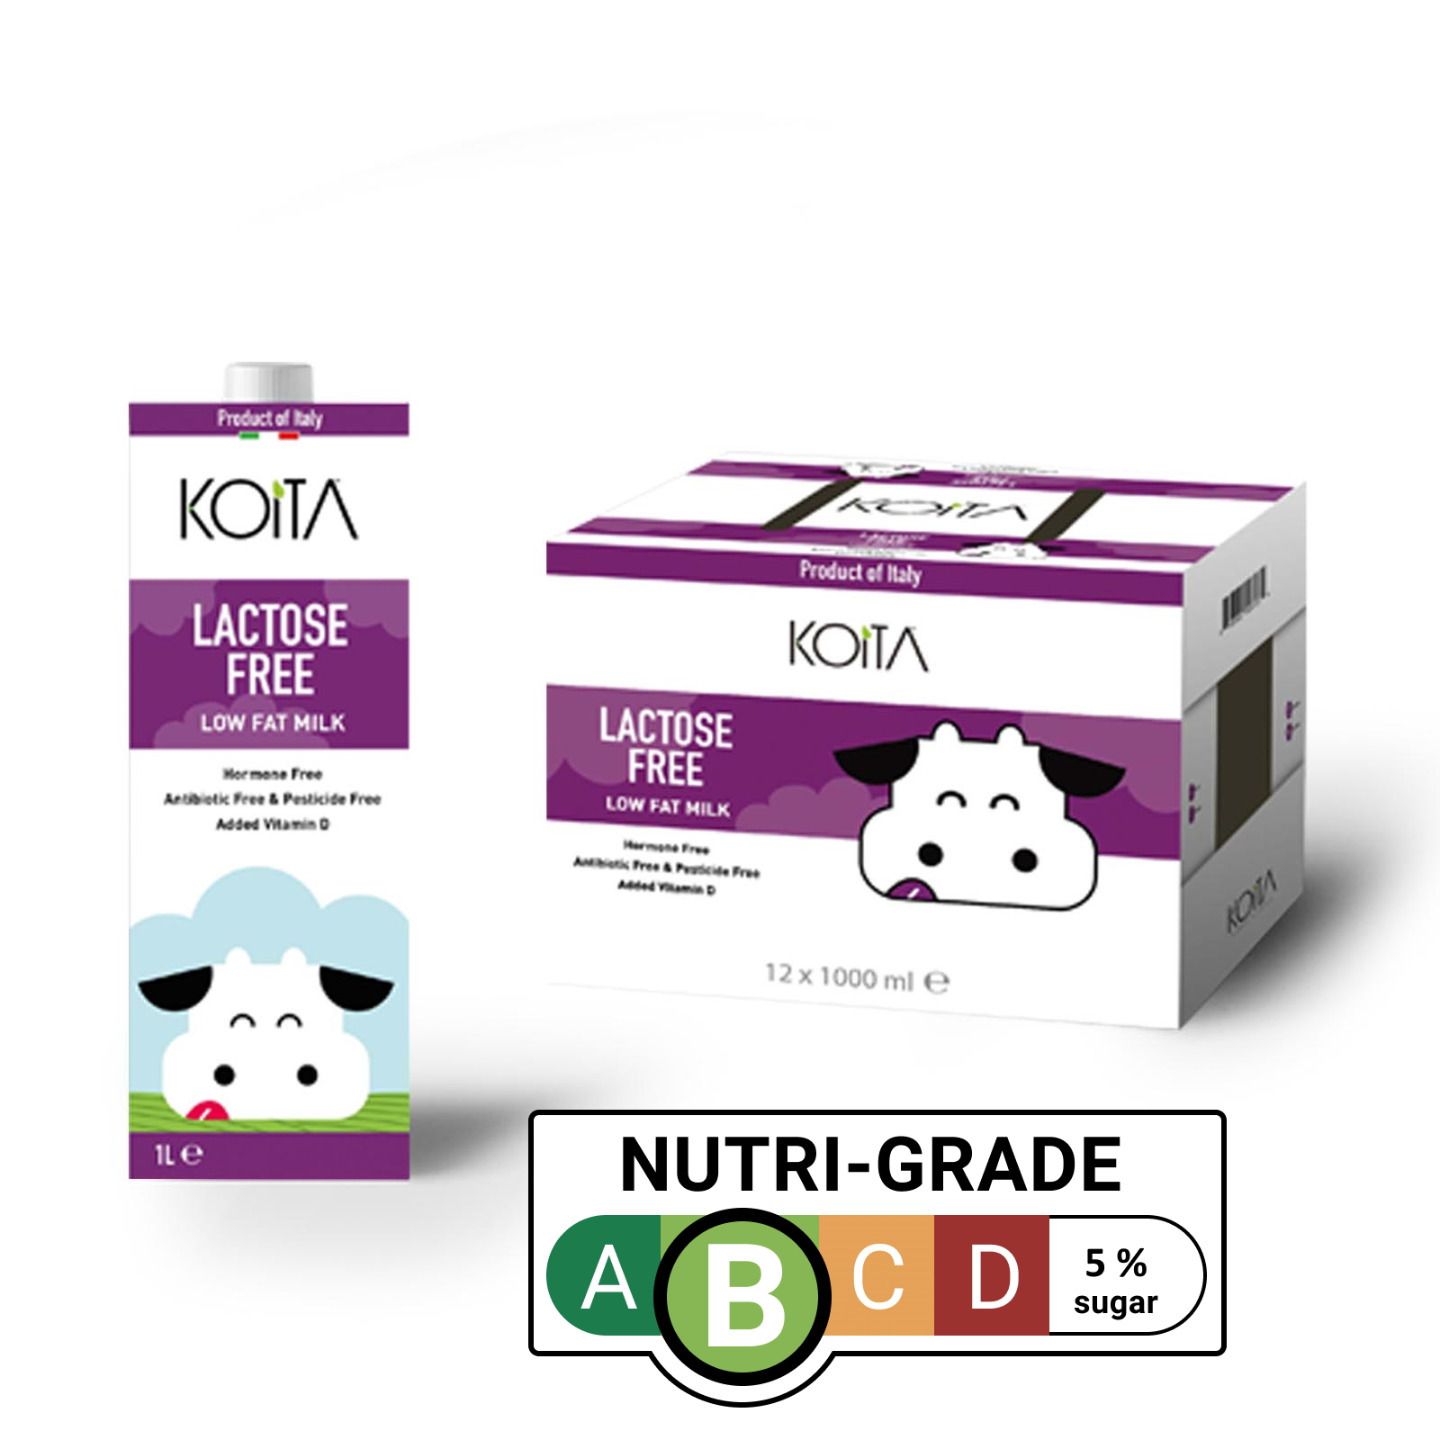 Koita Lactose Free Low Fat Milk Added Vitamin D 12 X 1000ml